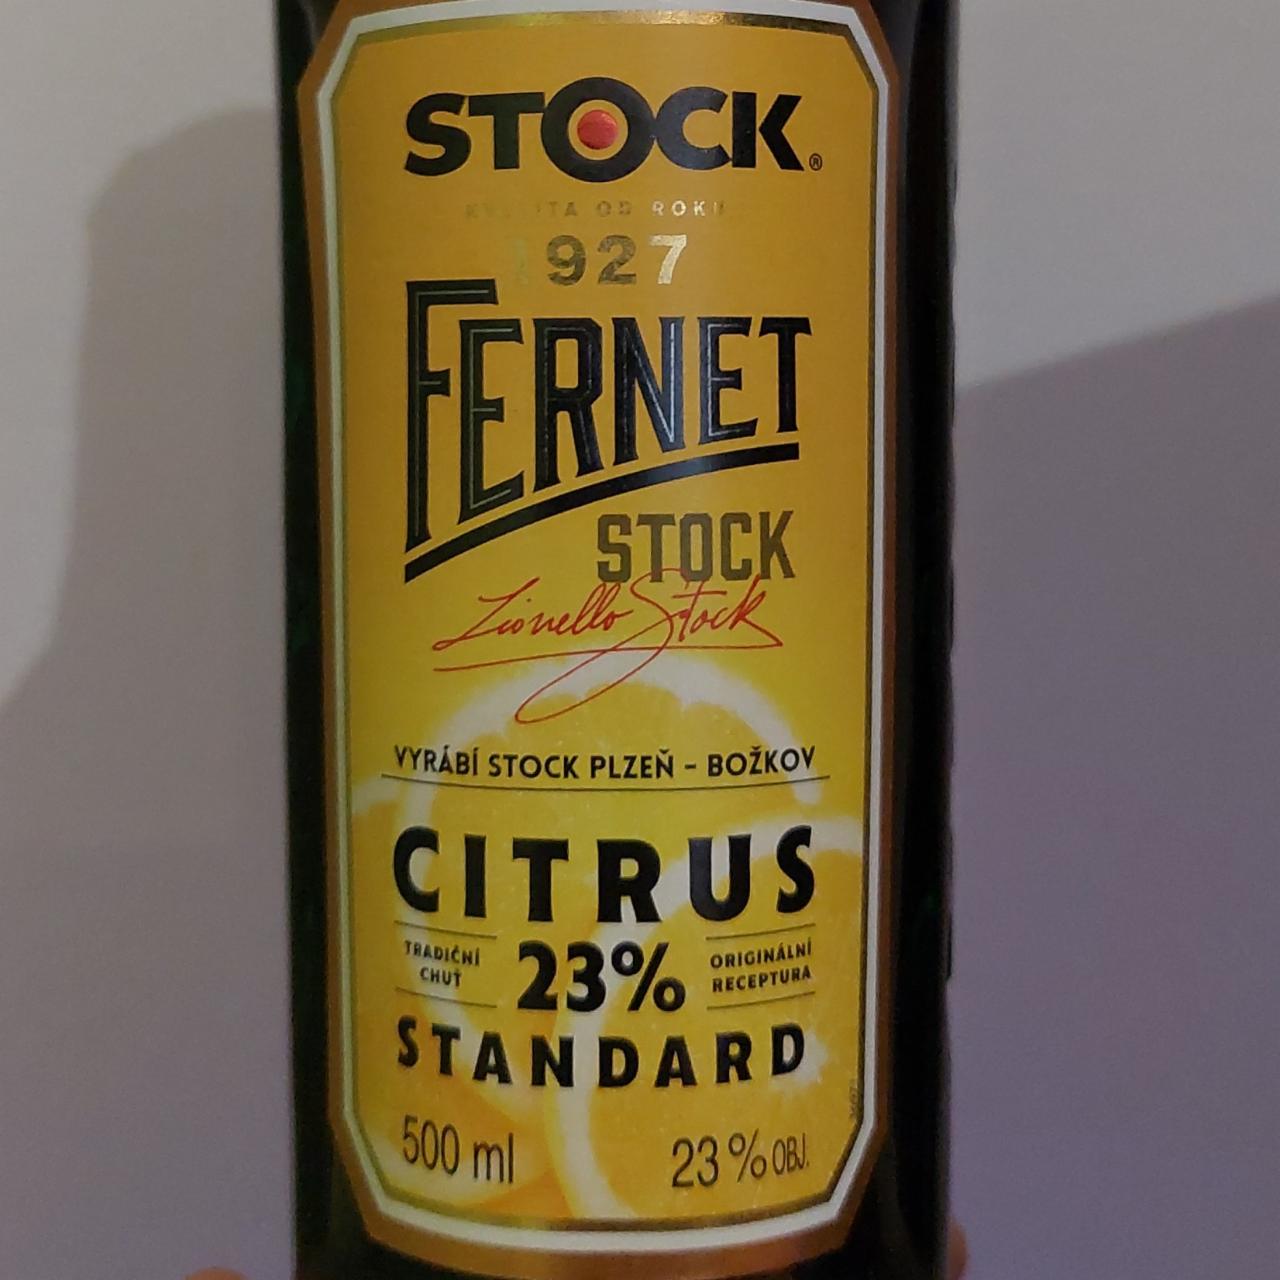 Fotografie - Fernet Stock Citrus 23% Standard stock.